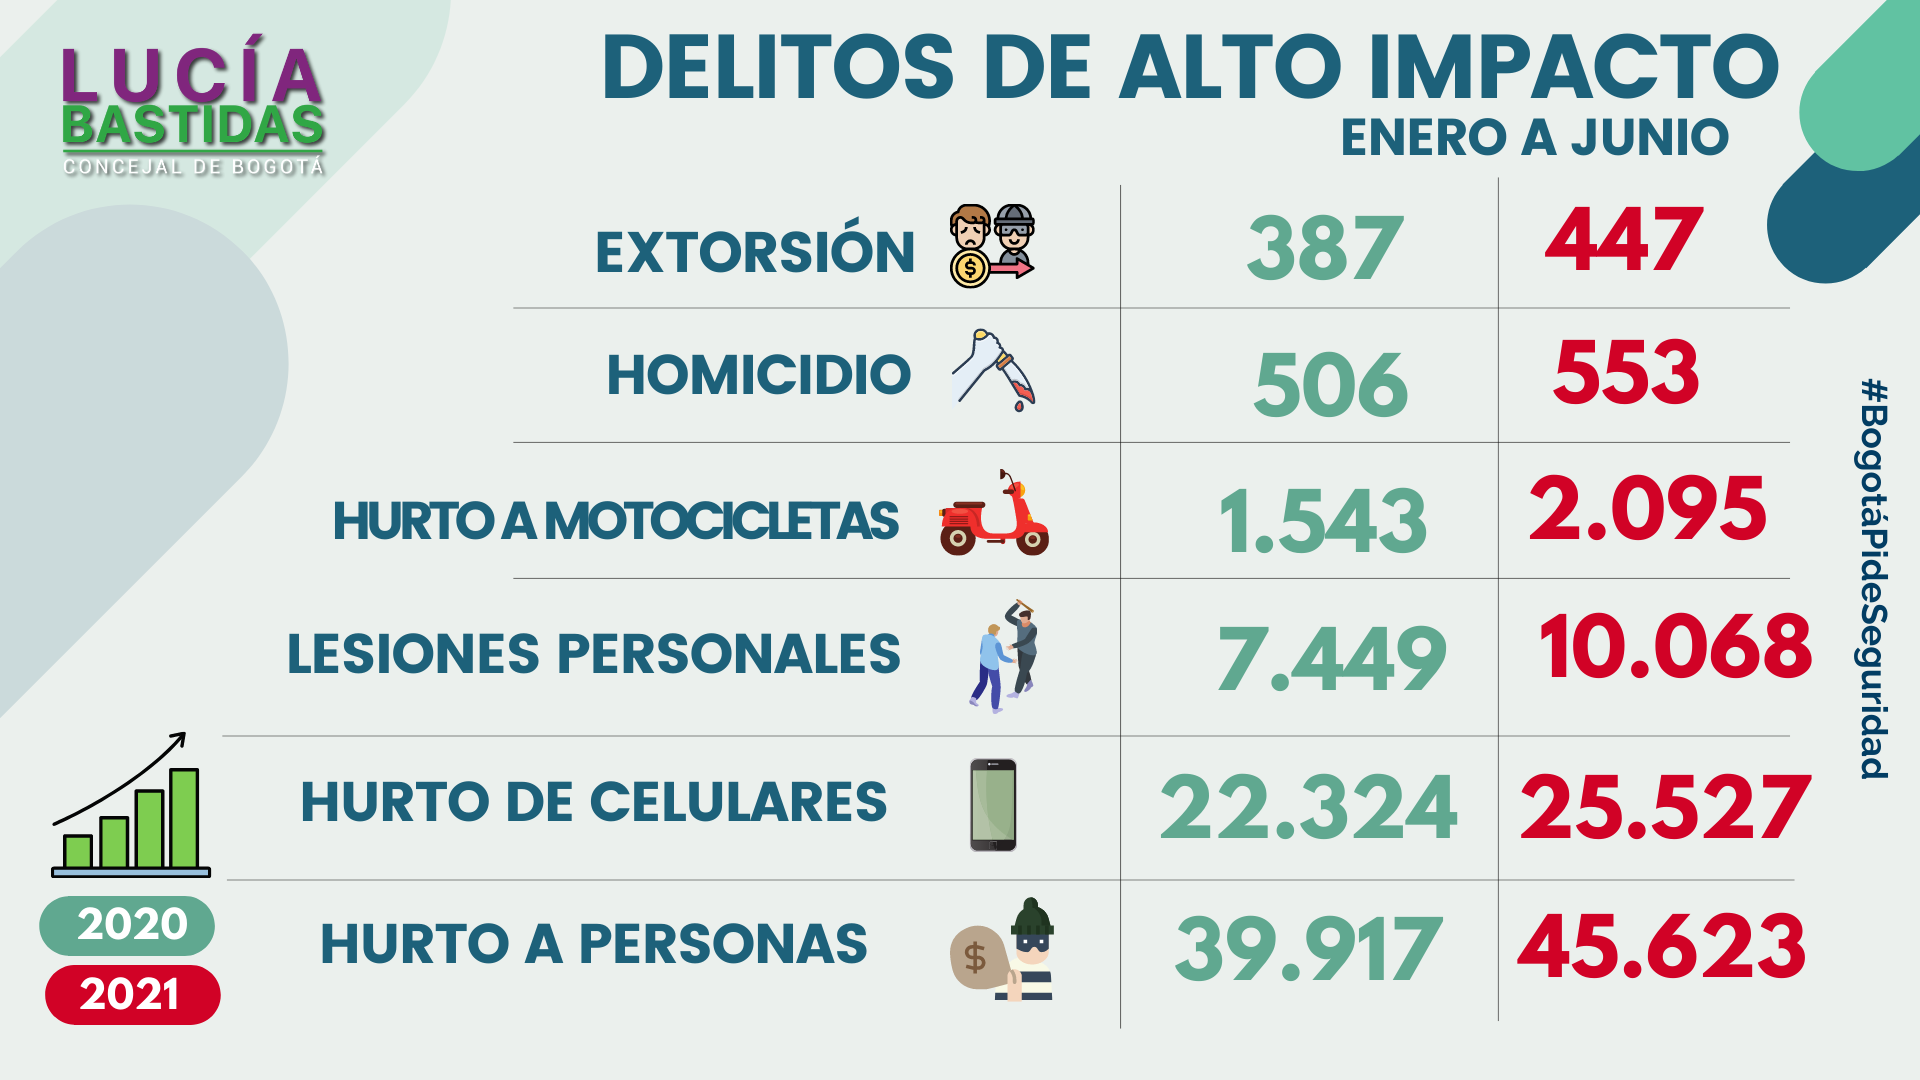 Imagen que muestra la cifras para los delitos de alto impacto entre los mese Enero a Junio